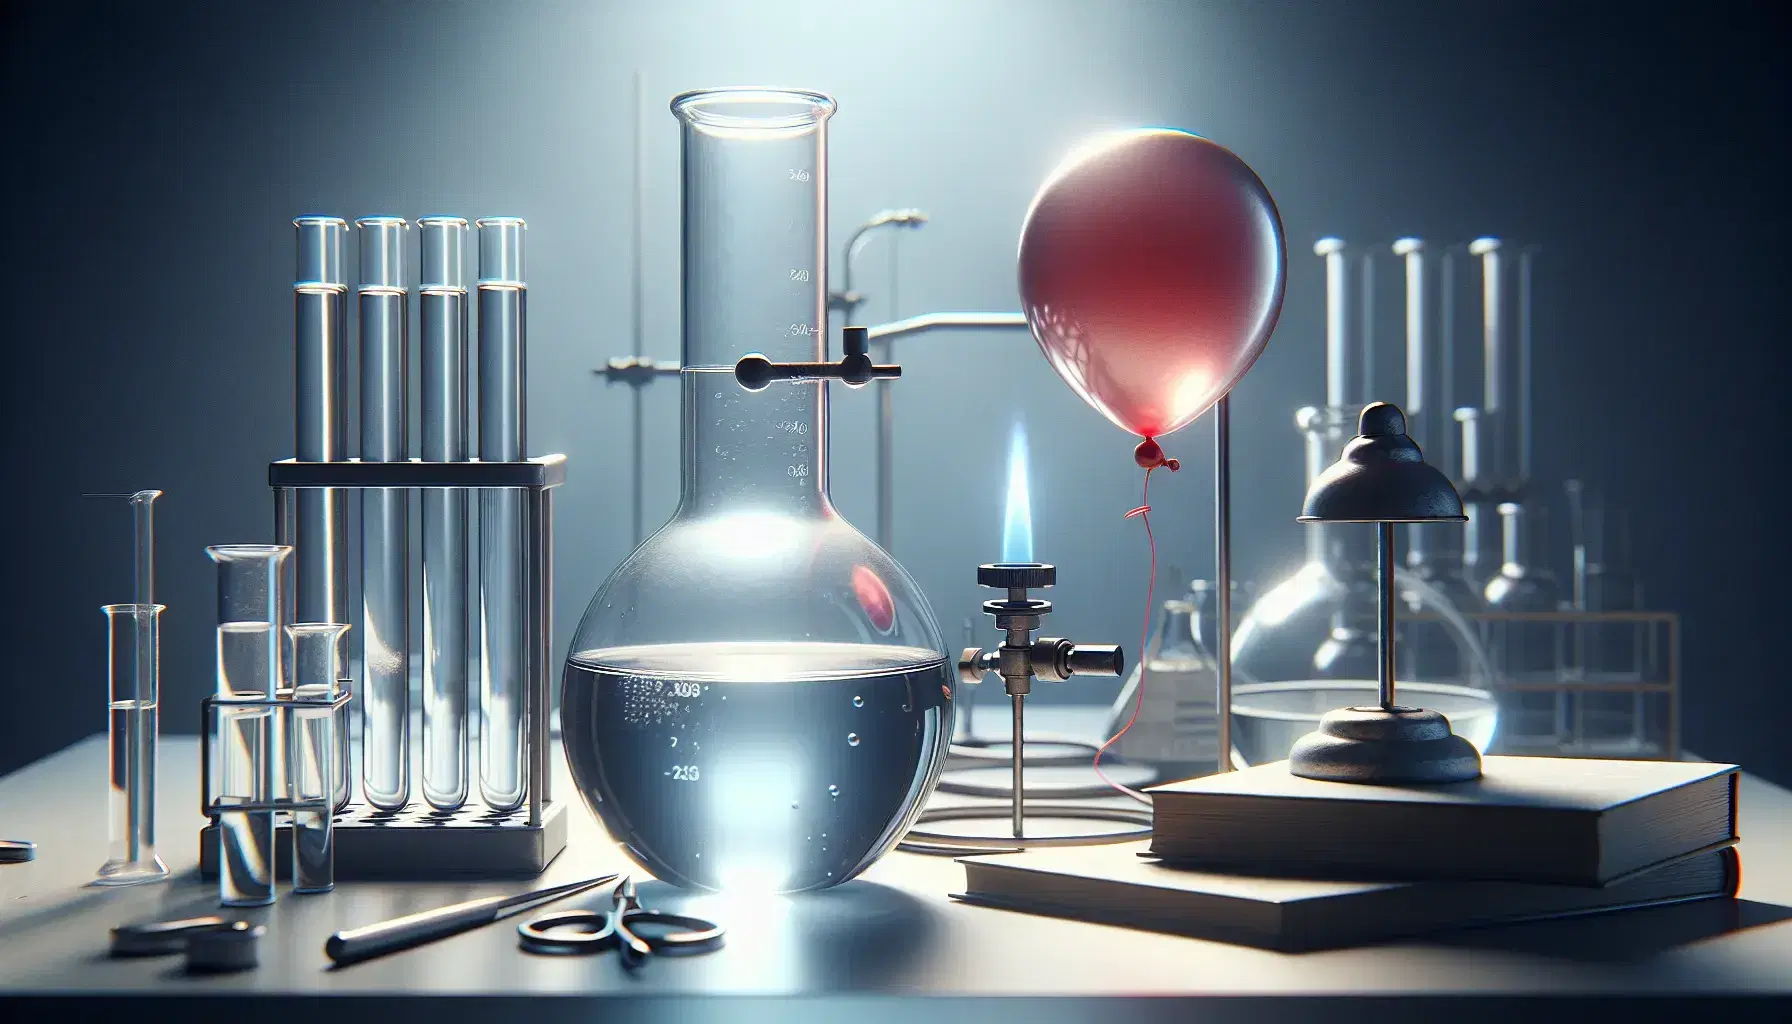 Laboratorio científico con matraz Erlenmeyer con líquido, tubo de ensayo con sólido blanco, globo rojo inflado y mechero Bunsen encendido sobre mesa blanca.